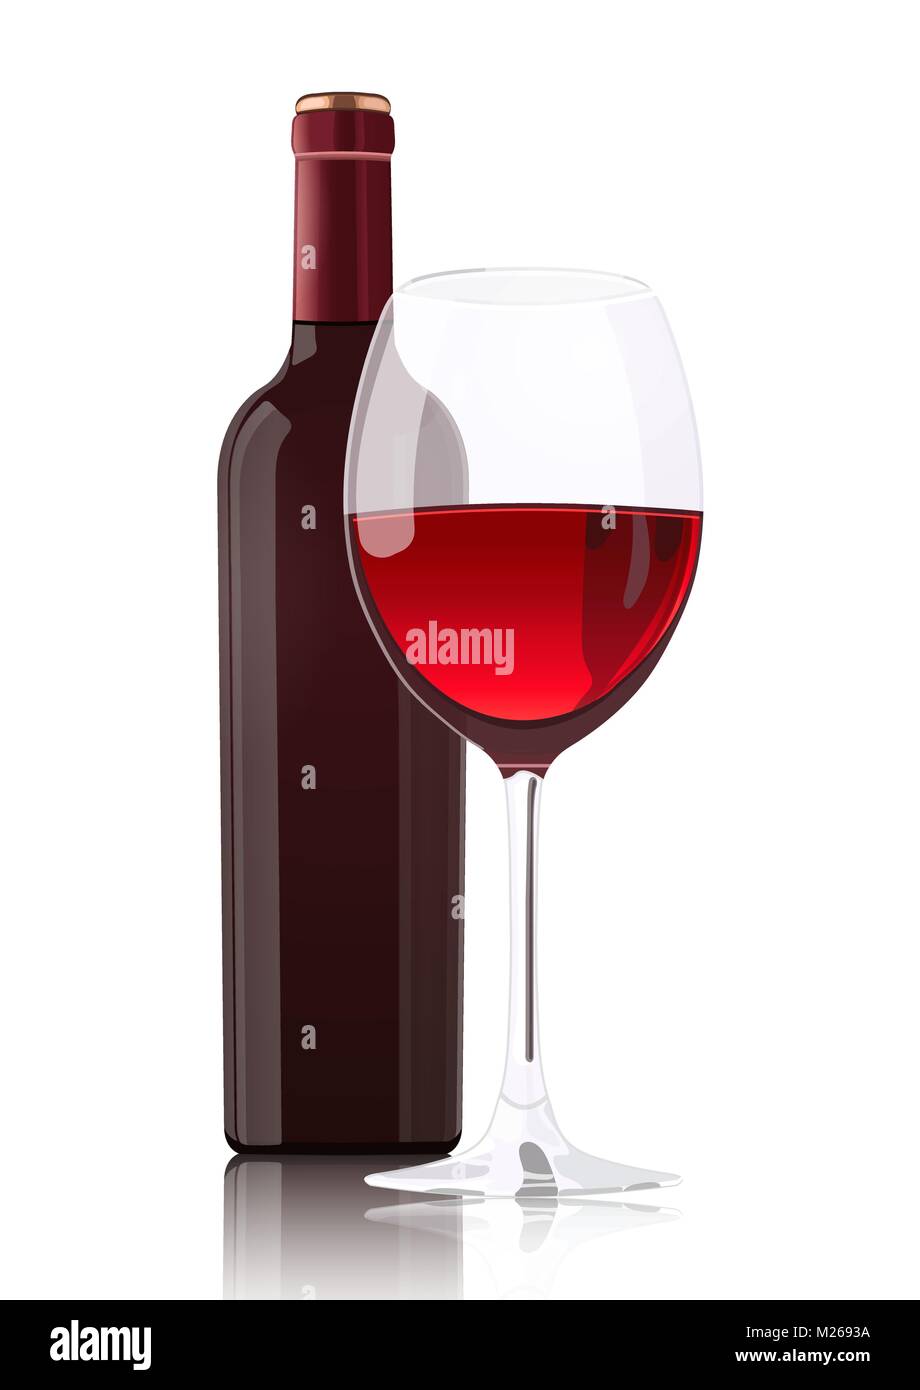 Bouteille de vin rouge sans étiquette et un verre de vin, vector dessin réaliste, isolé sur fond blanc Illustration de Vecteur